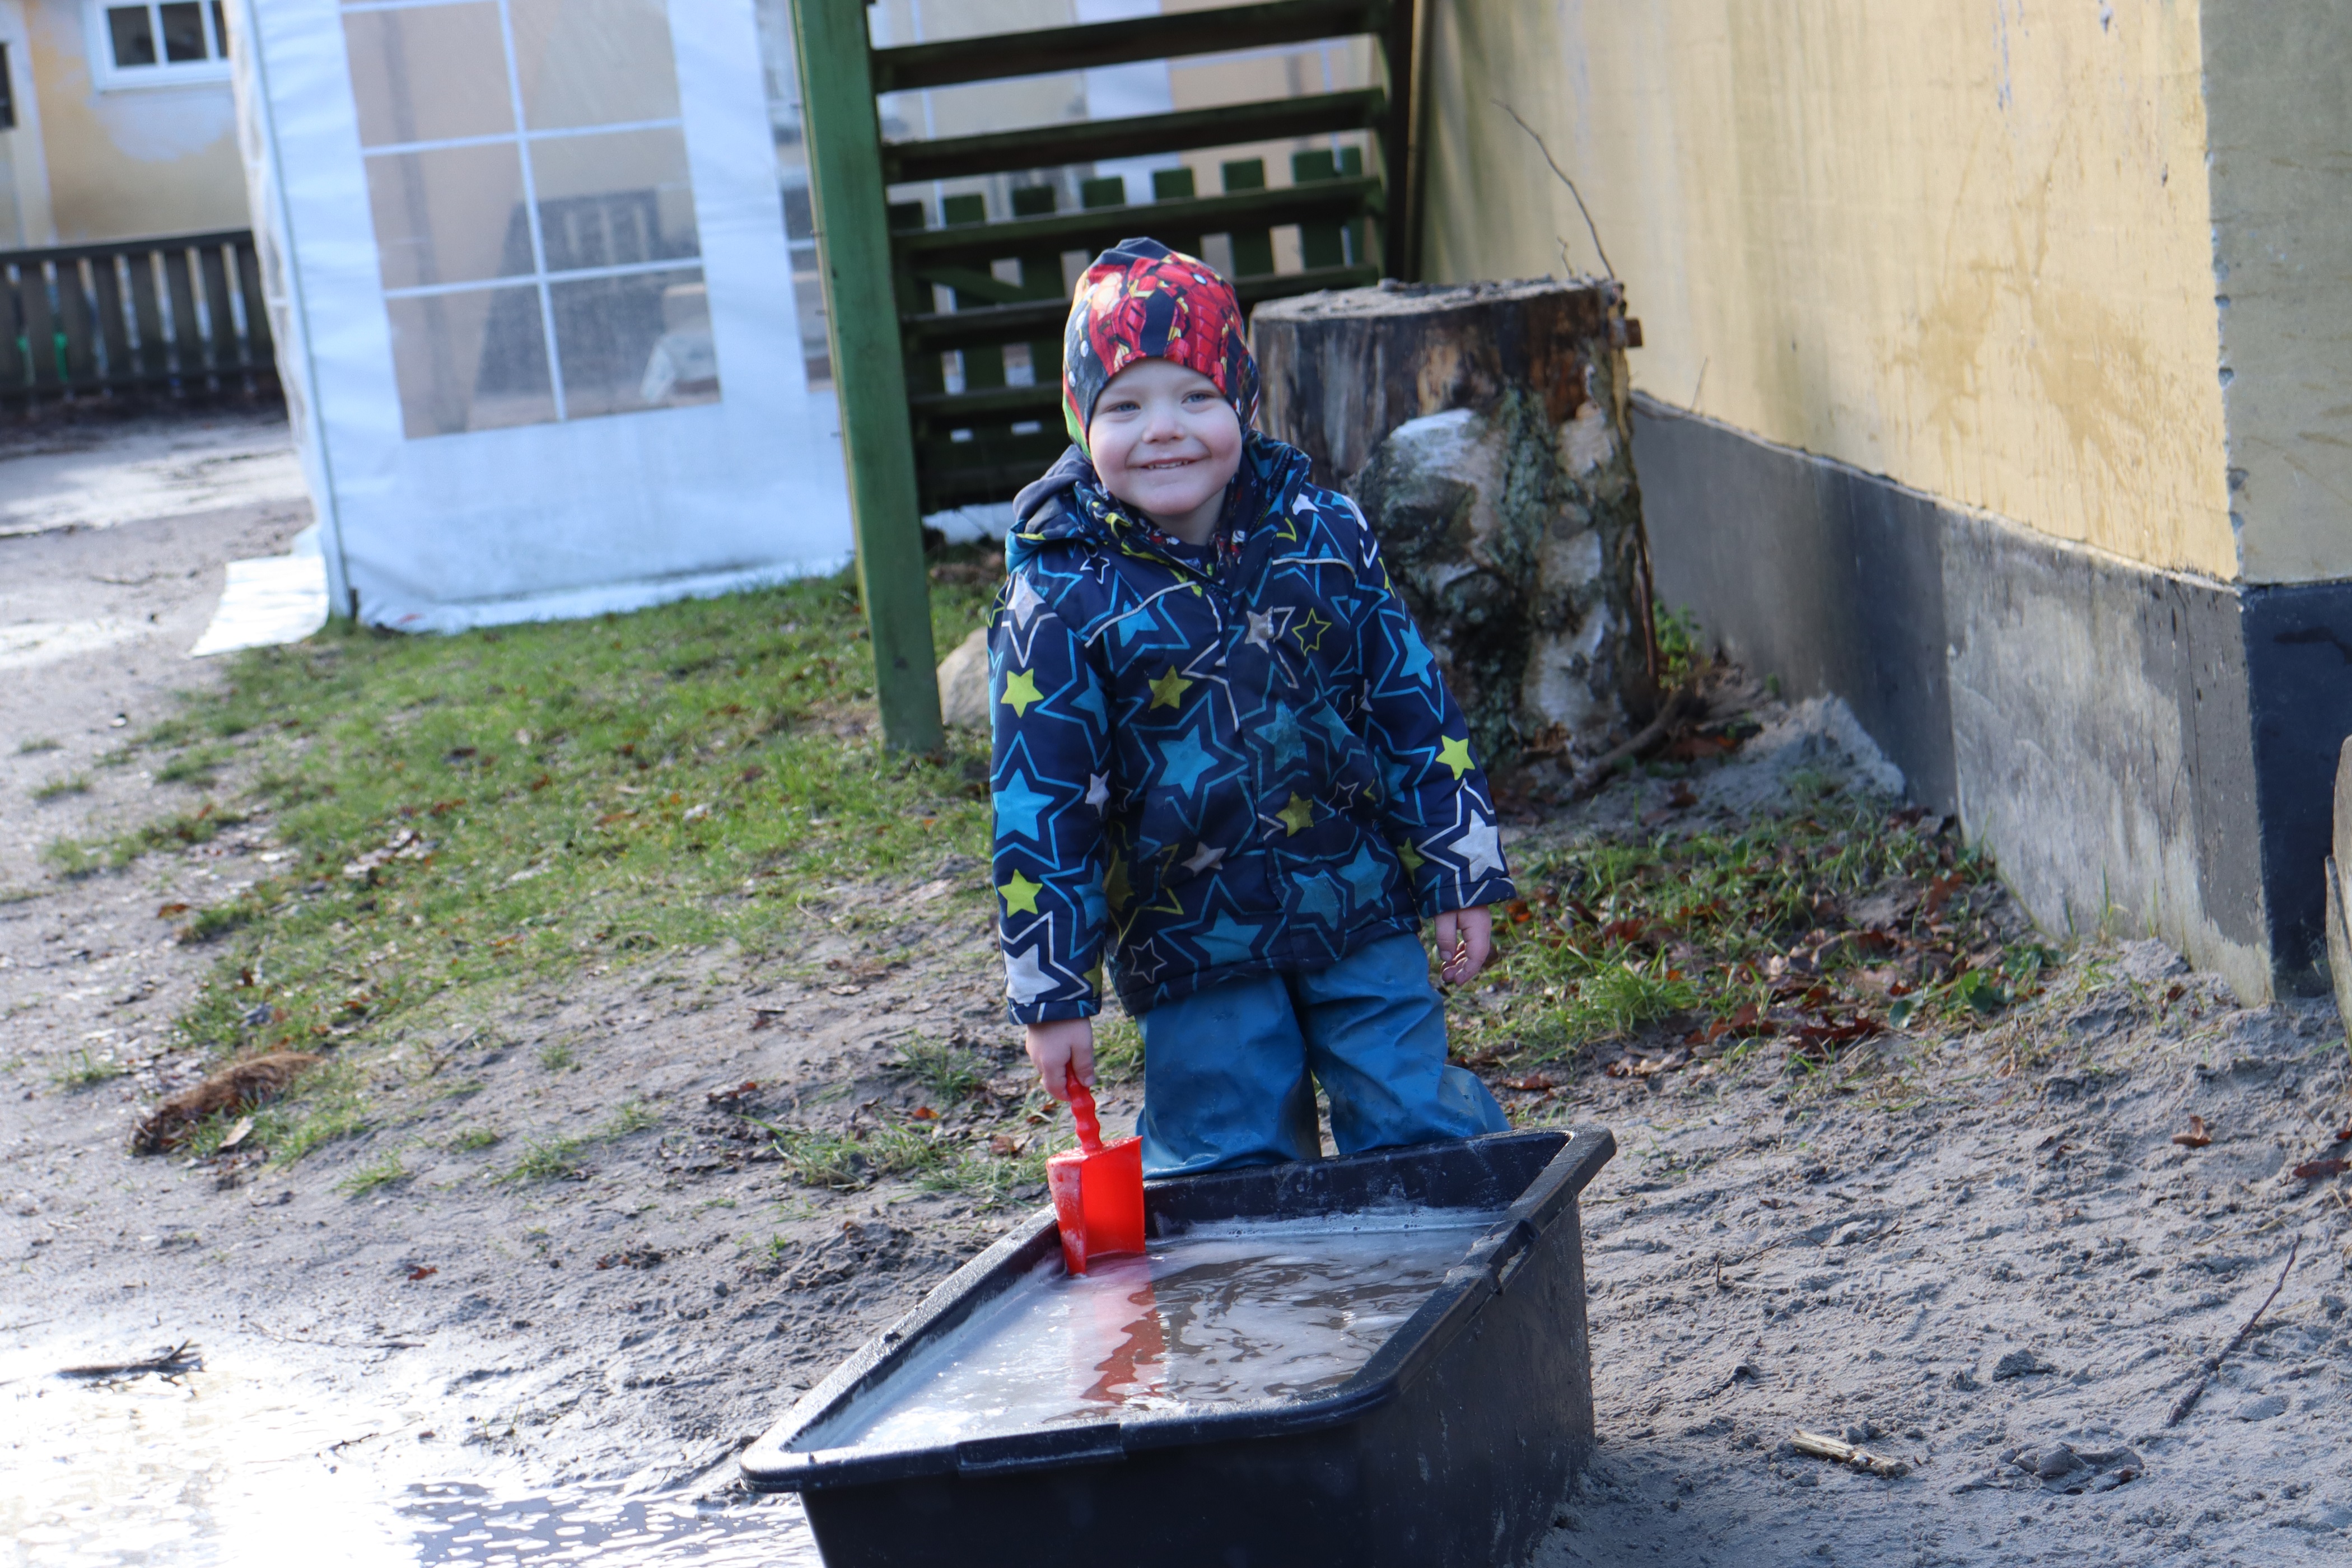 Dreng leger med vand i kasse, og smiler stort til kameraet